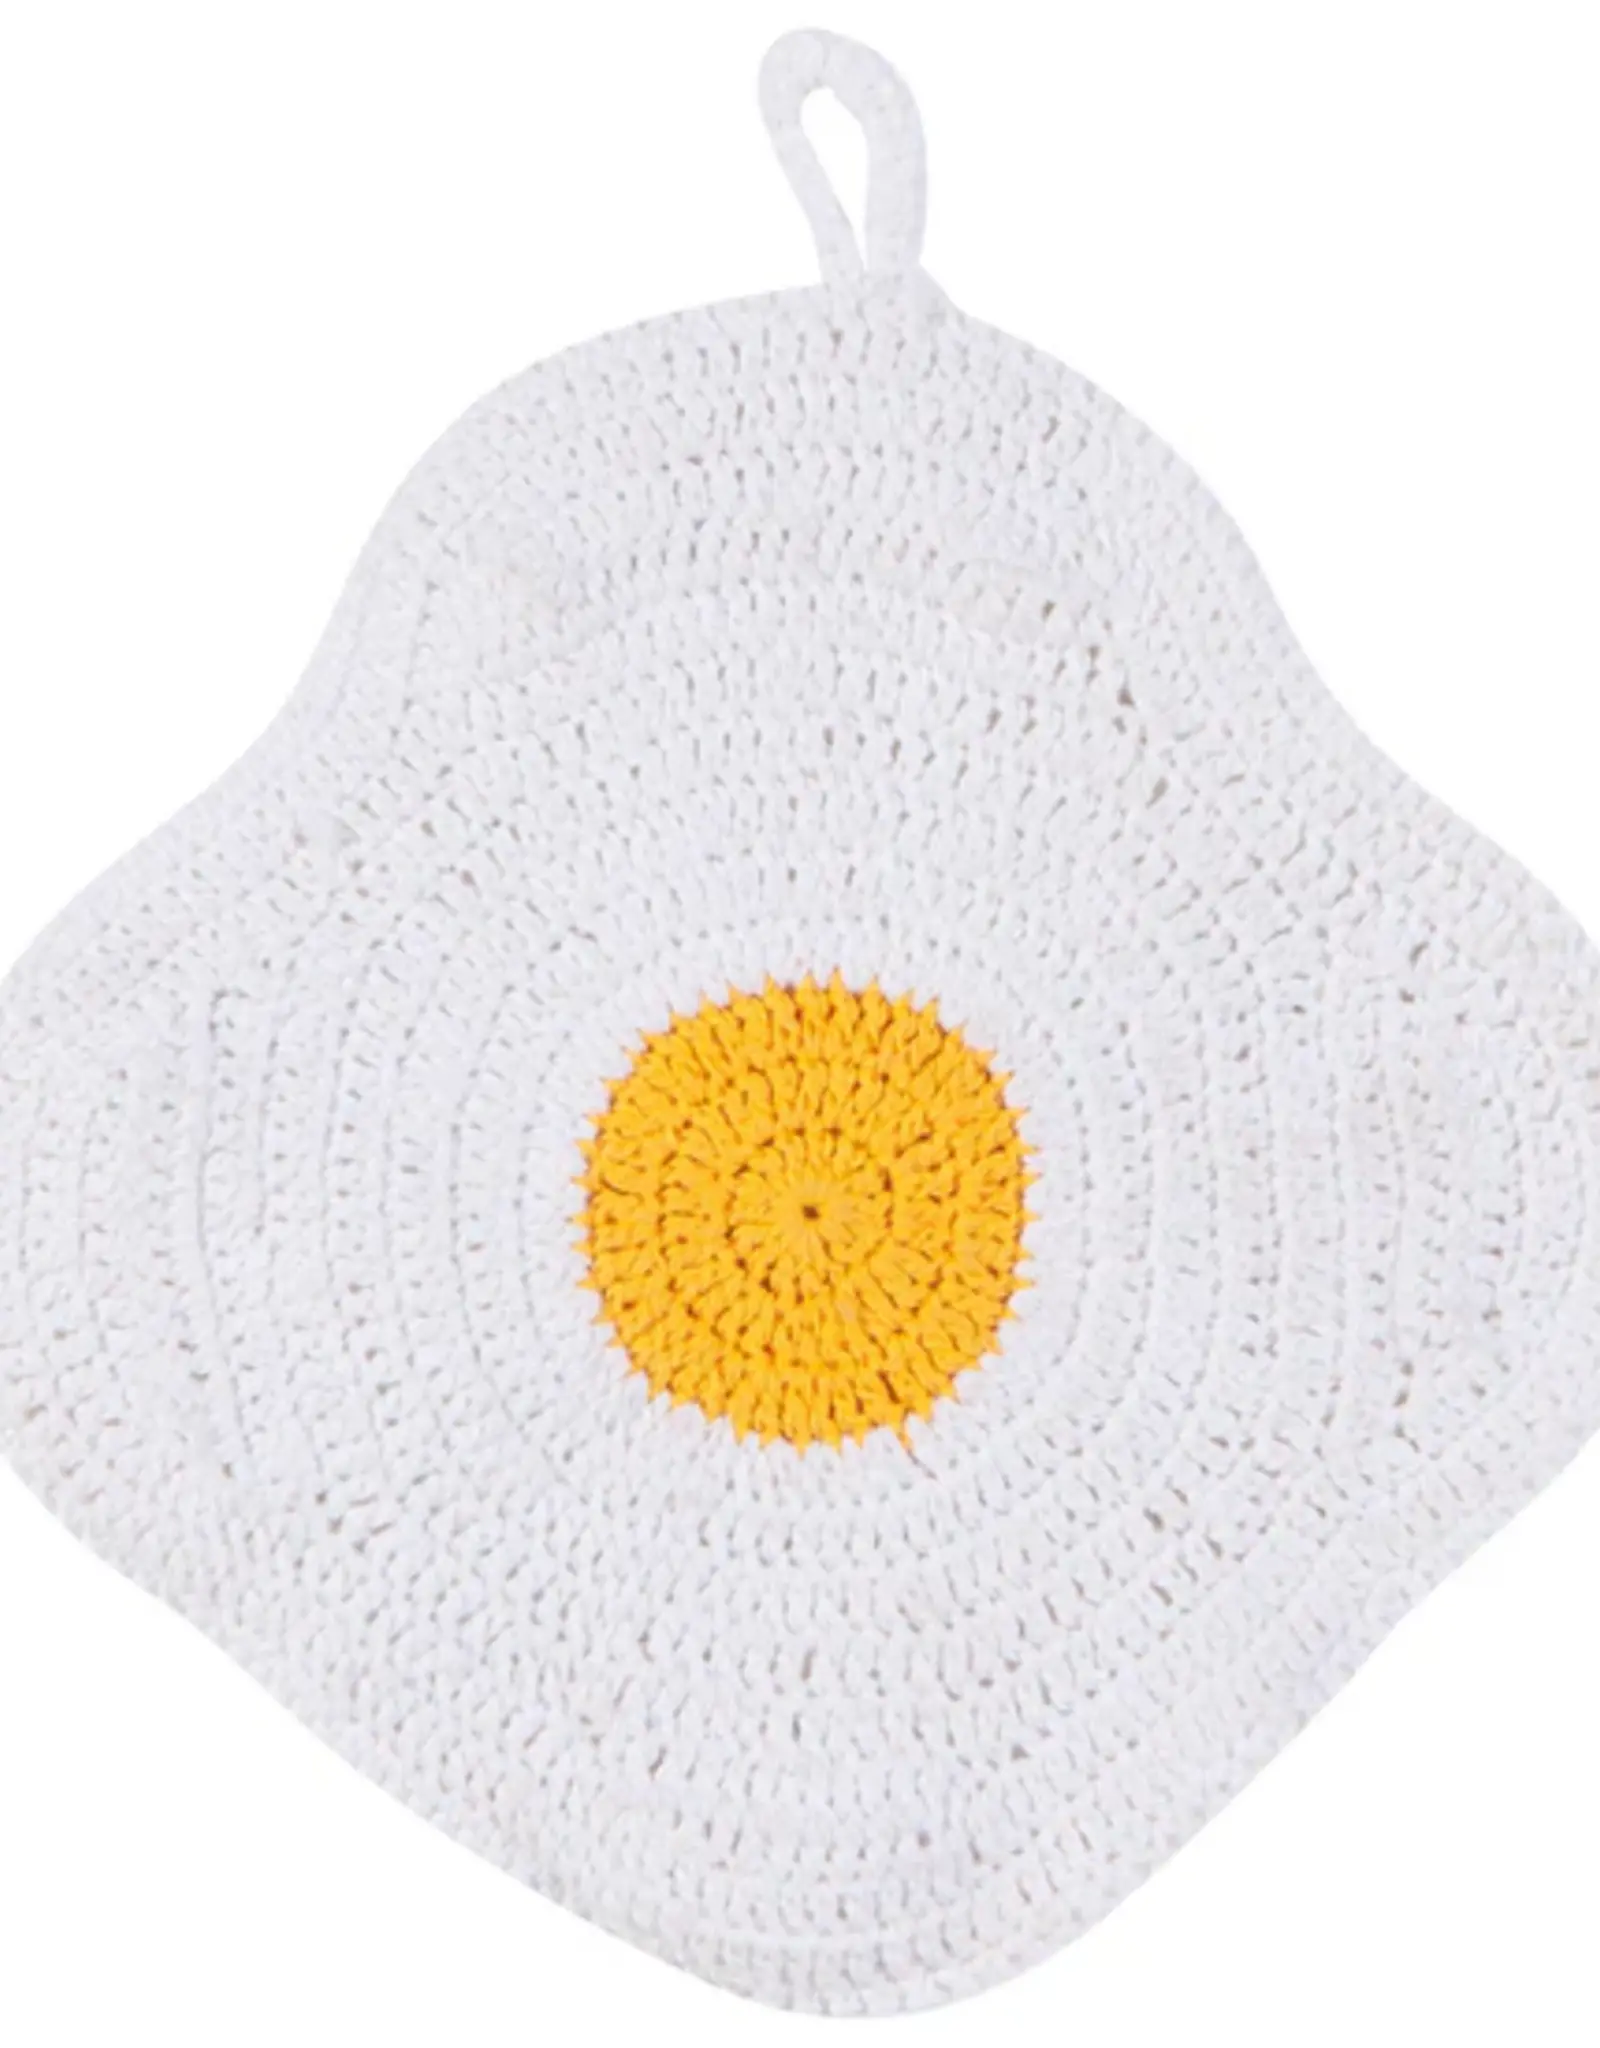 Danica + Now Designs Trivet - Crochet Egg